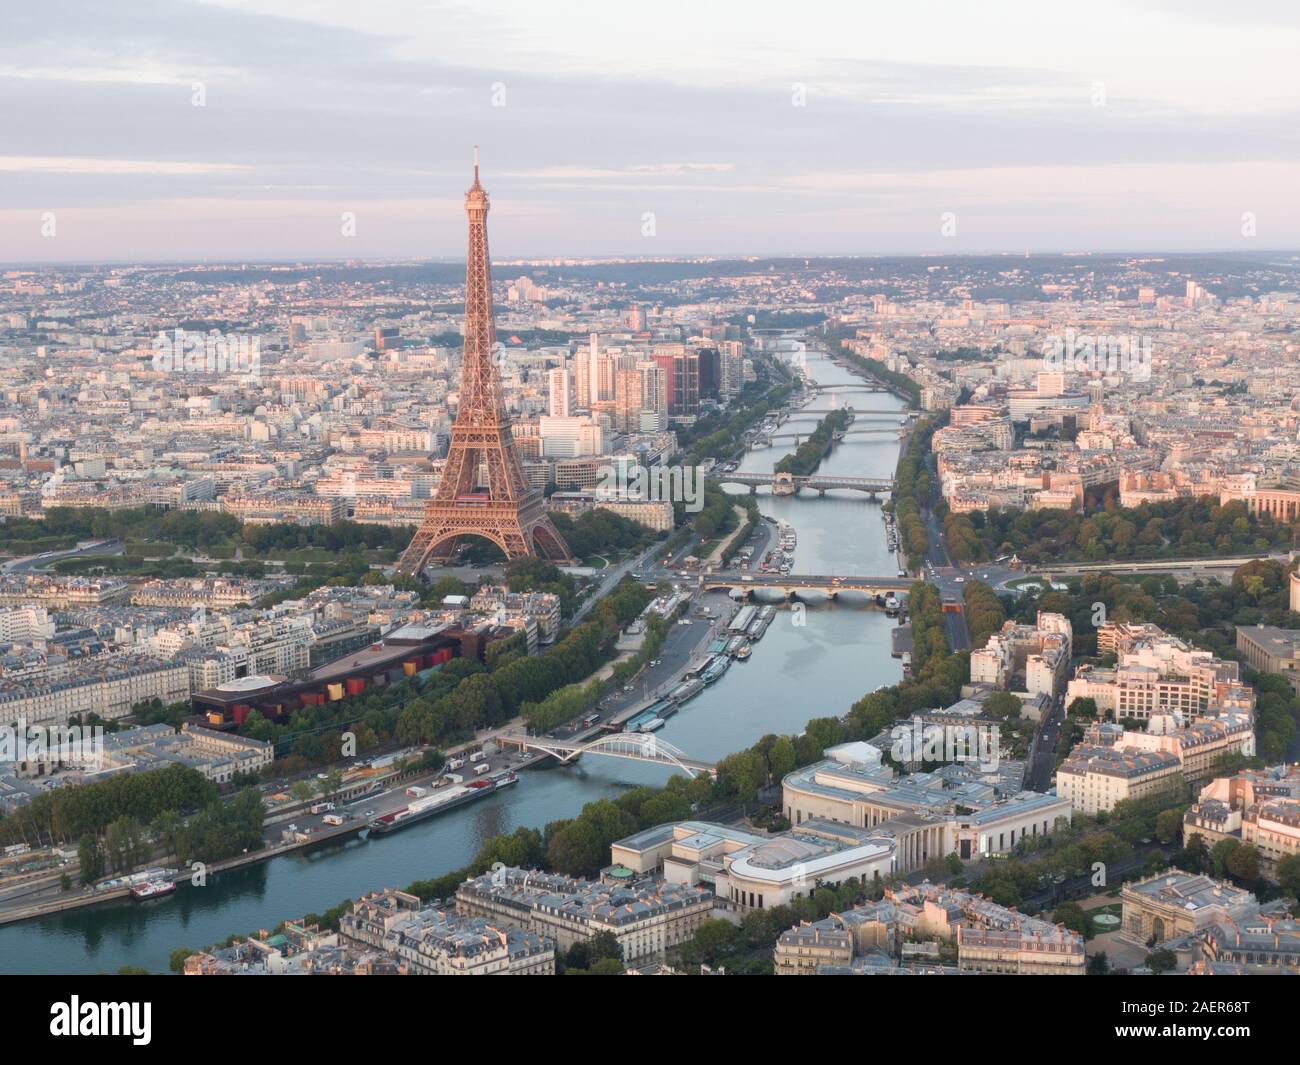 Paysage urbain de Paris, France avec la Tour Eiffel en vue Banque D'Images